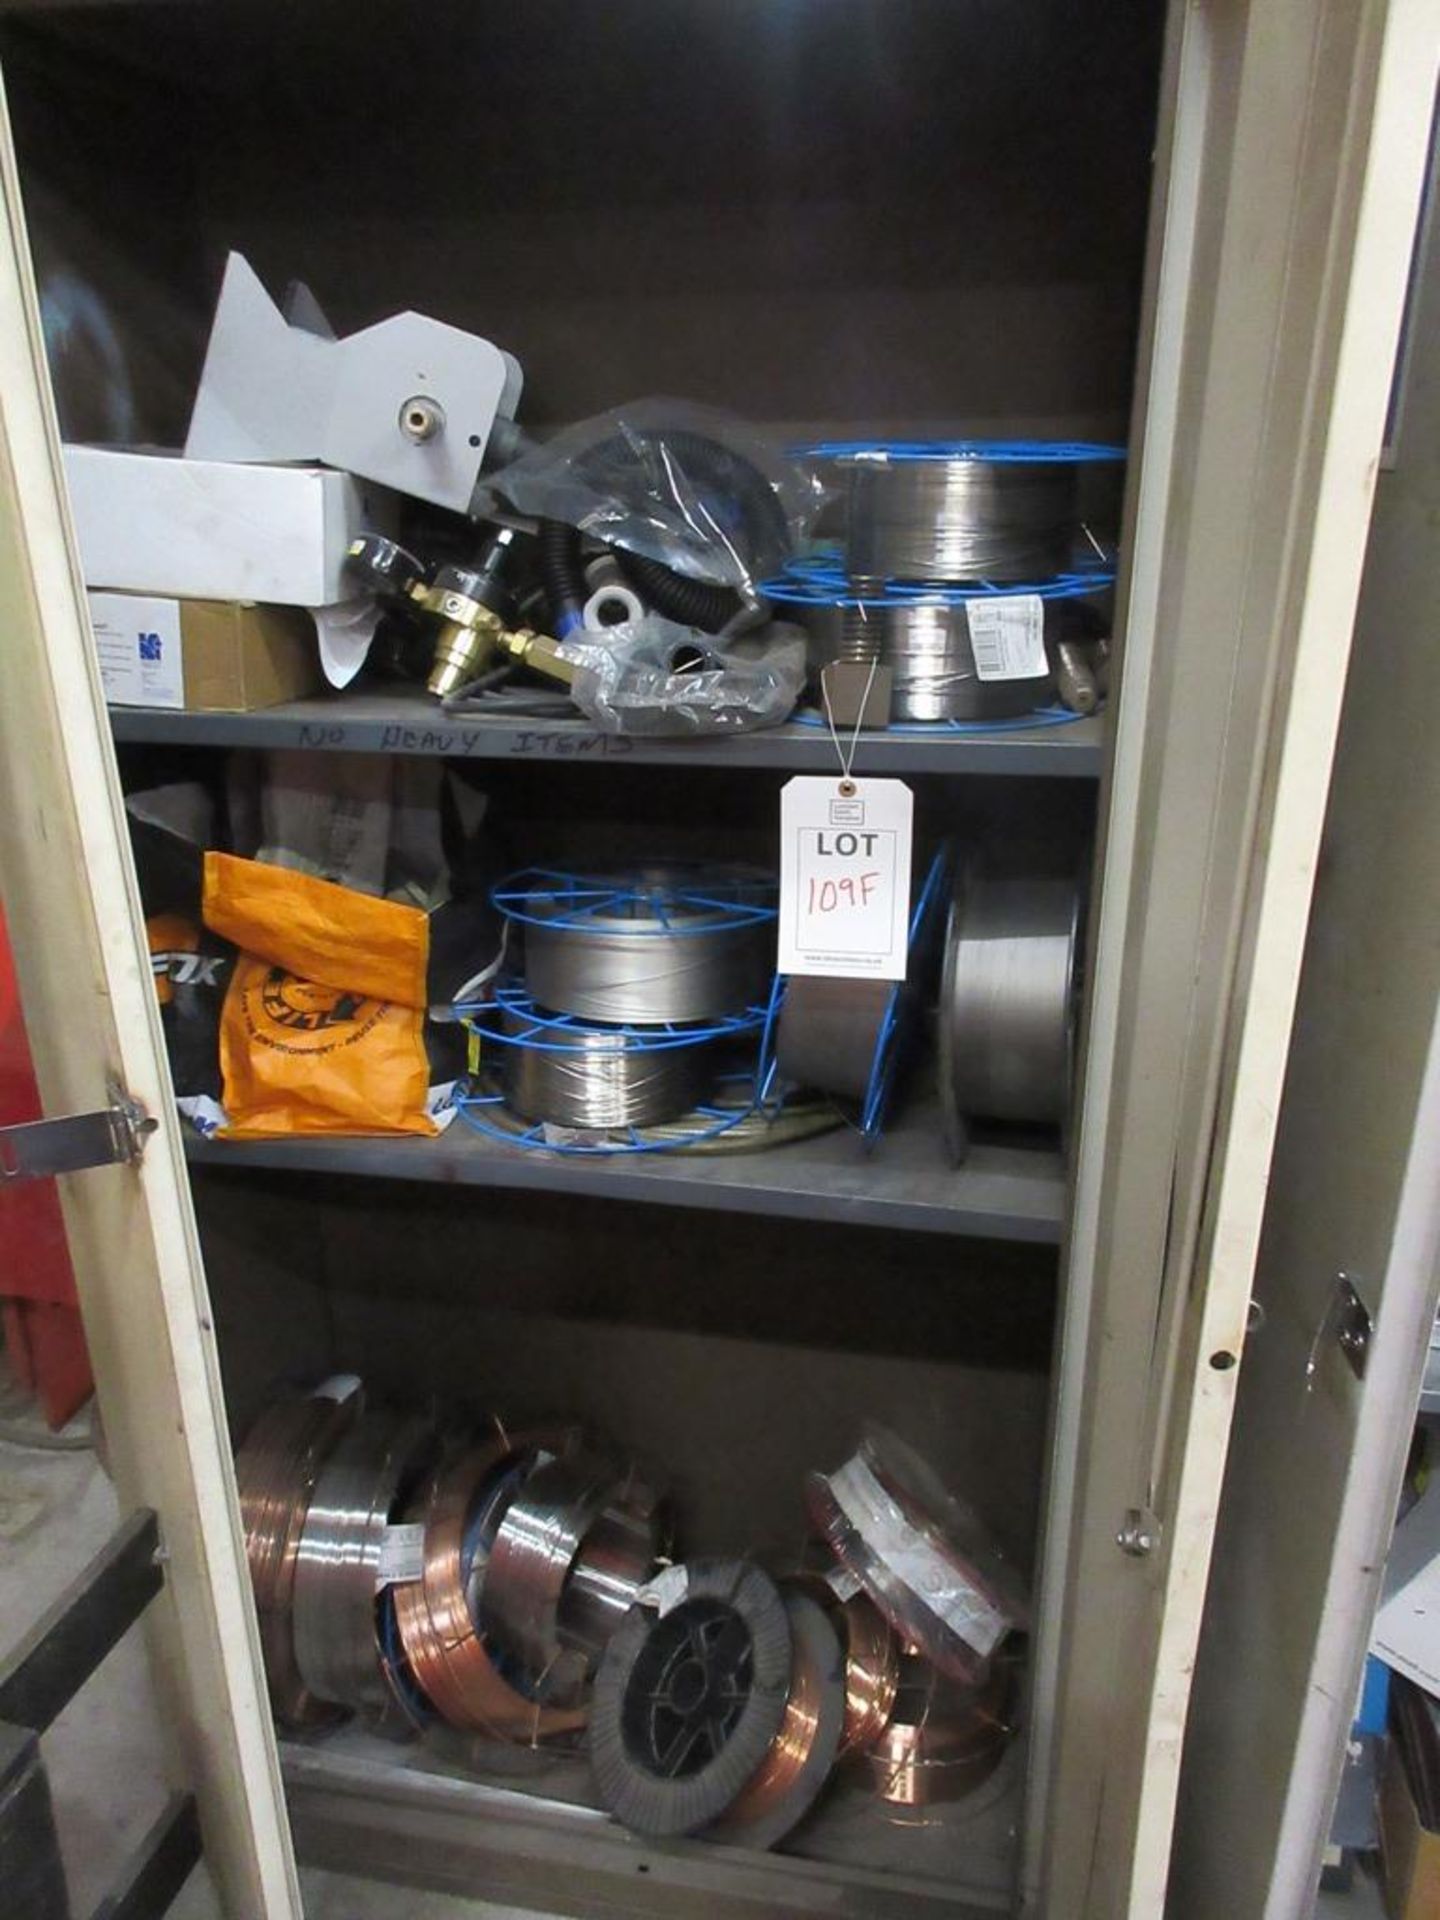 Cupboards and contents including assorted welding wire, regulators, etc.